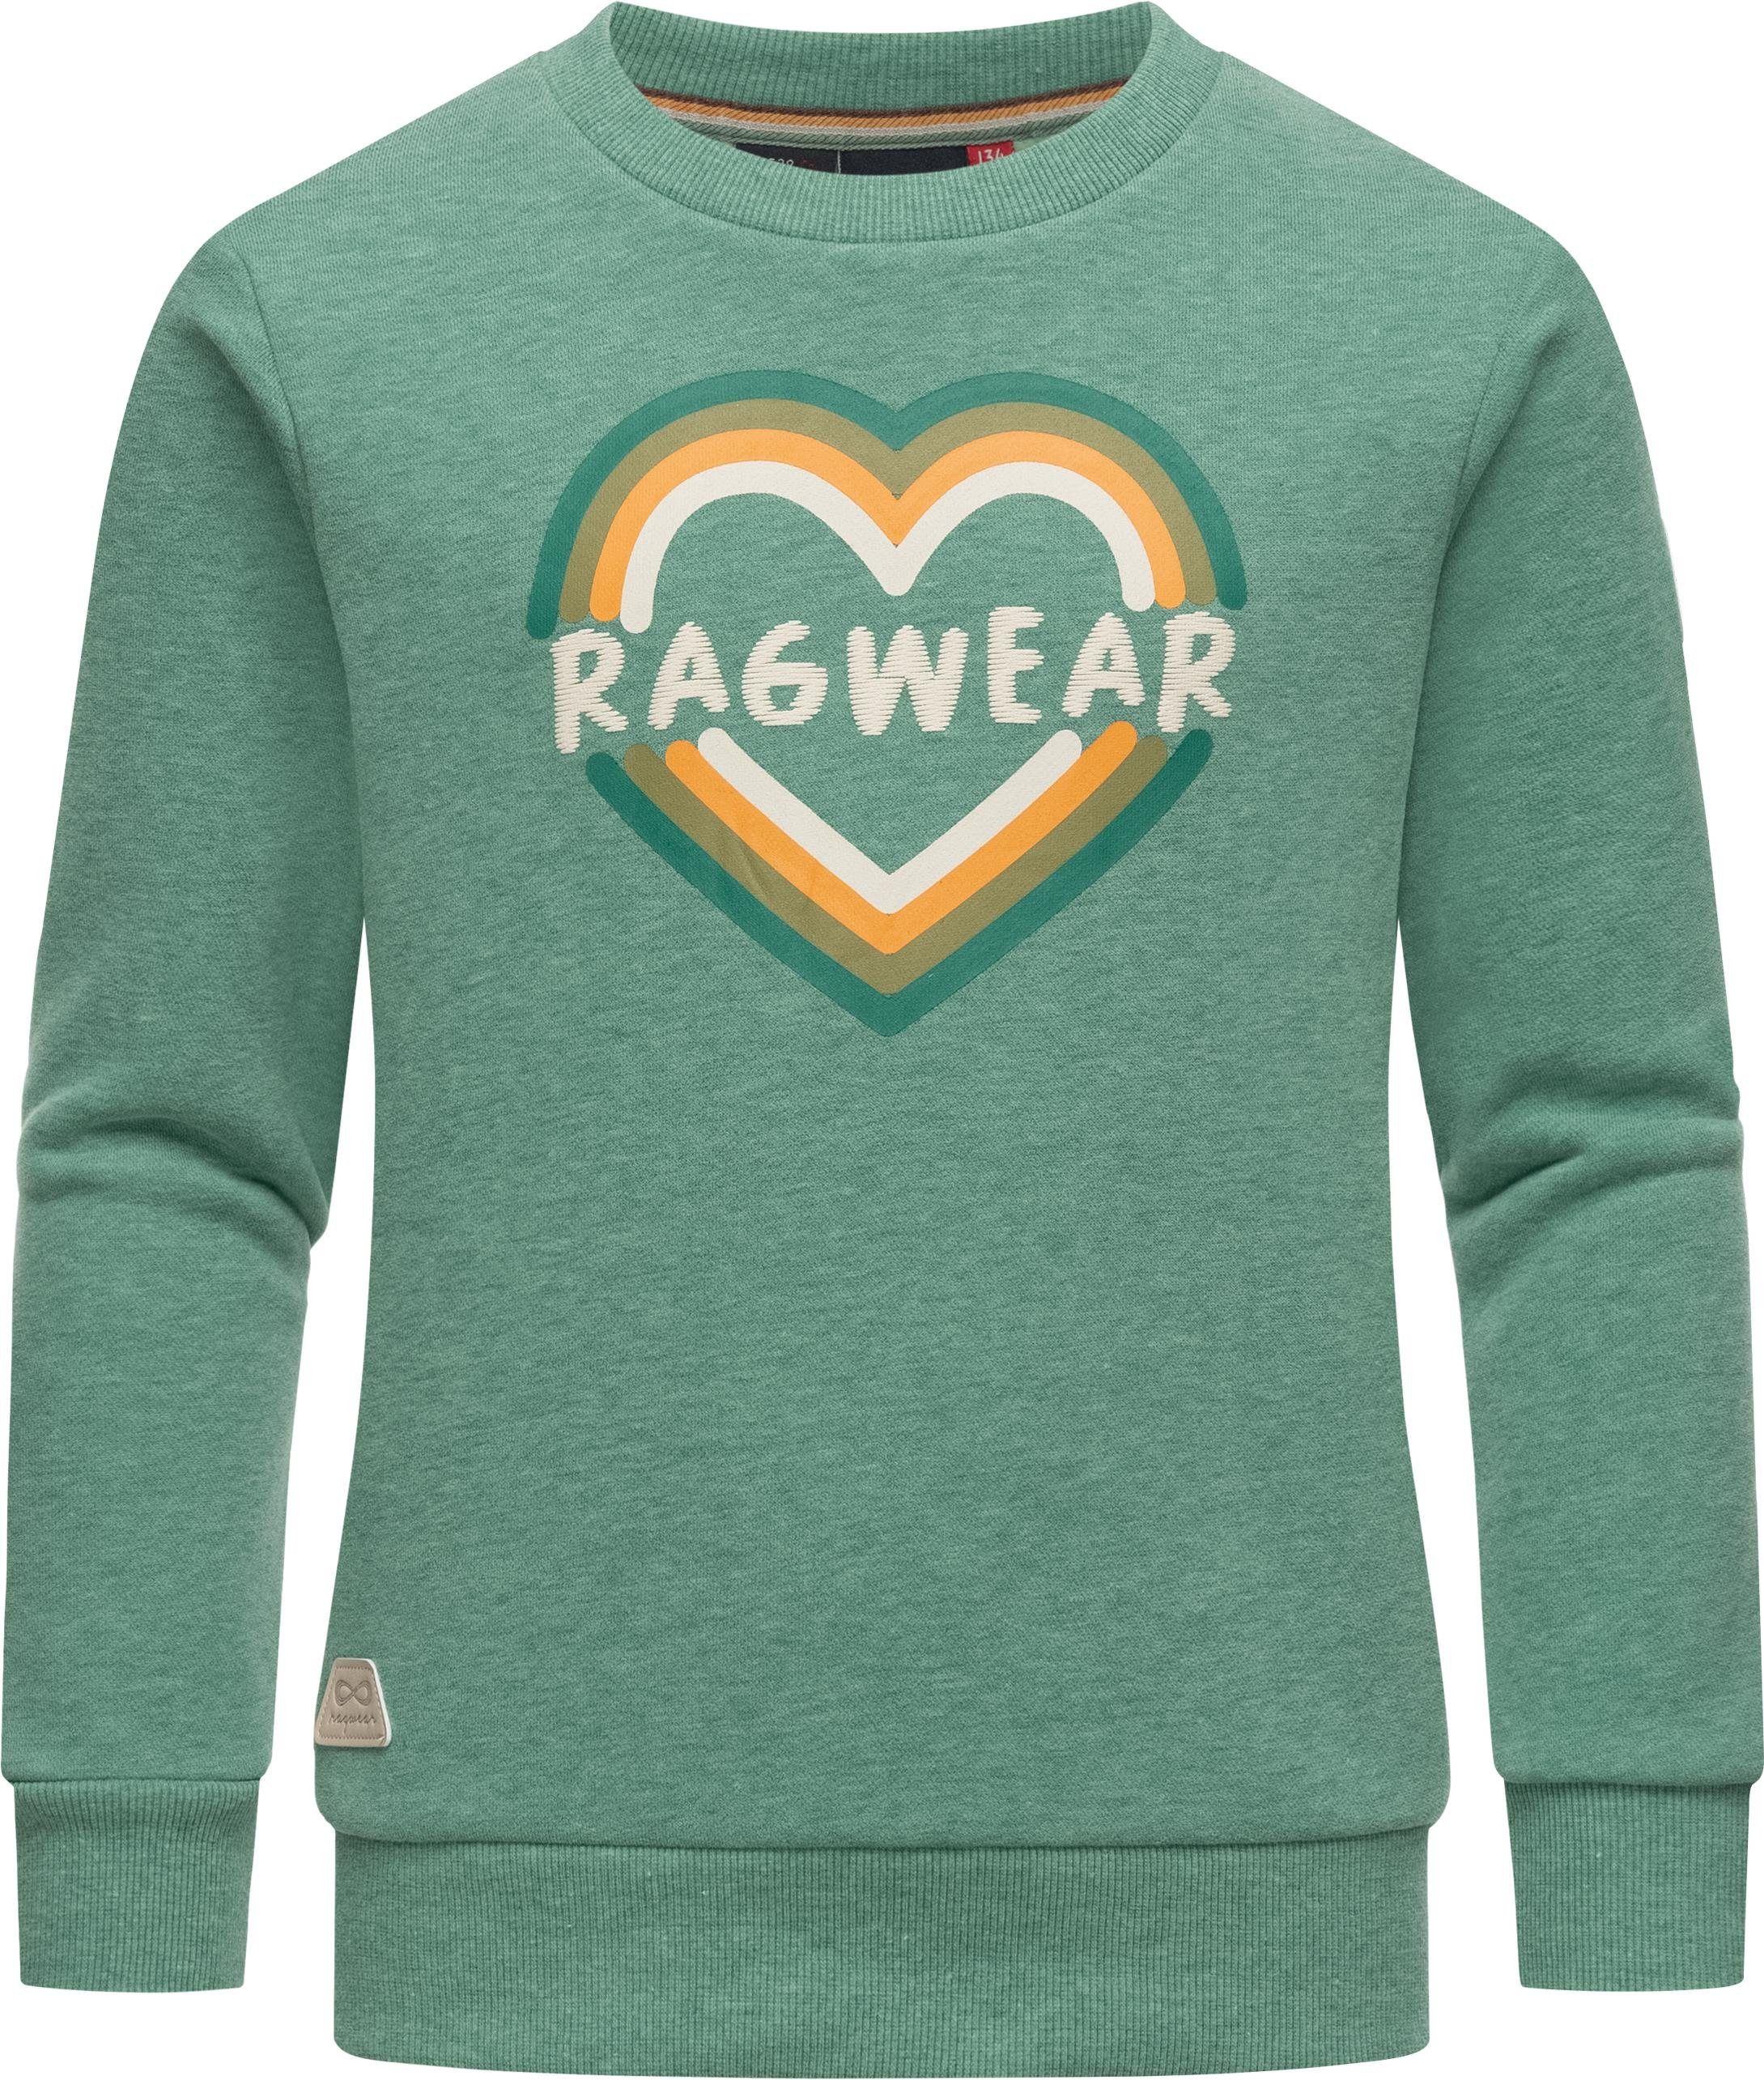 Ragwear Sweater Evka Print stylisches Logo mint coolem Mädchen Sweatshirt mit Print